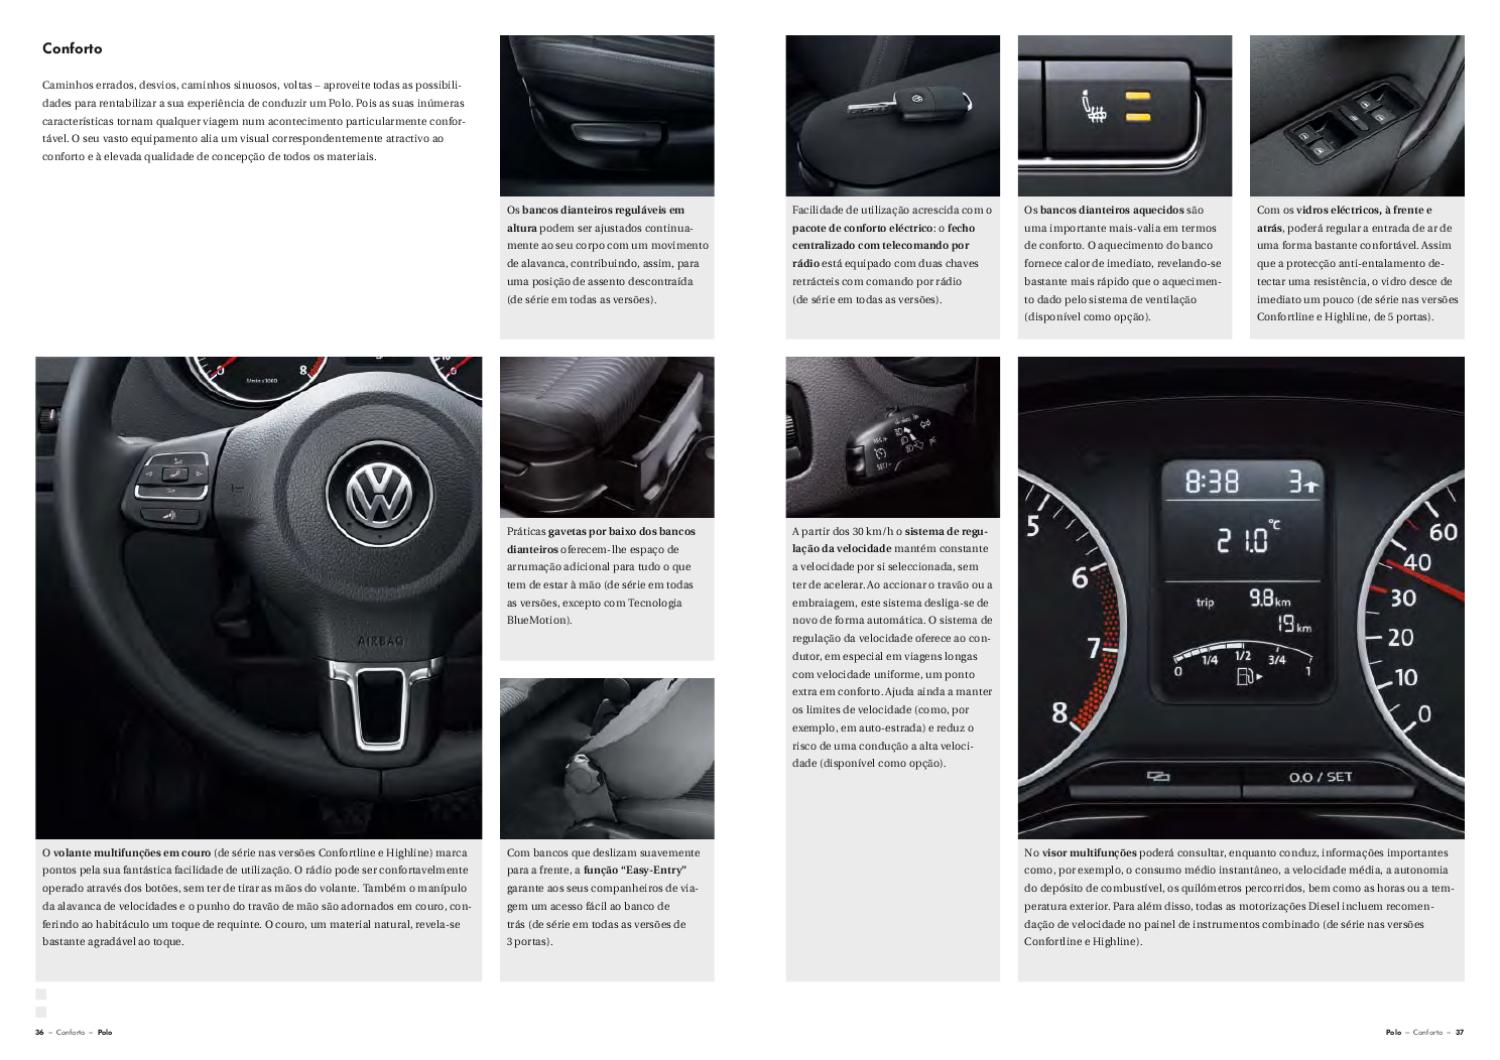 VW Polo Zubehör MJ 2011 - Prospekt Brochure + Preisliste 01.2011